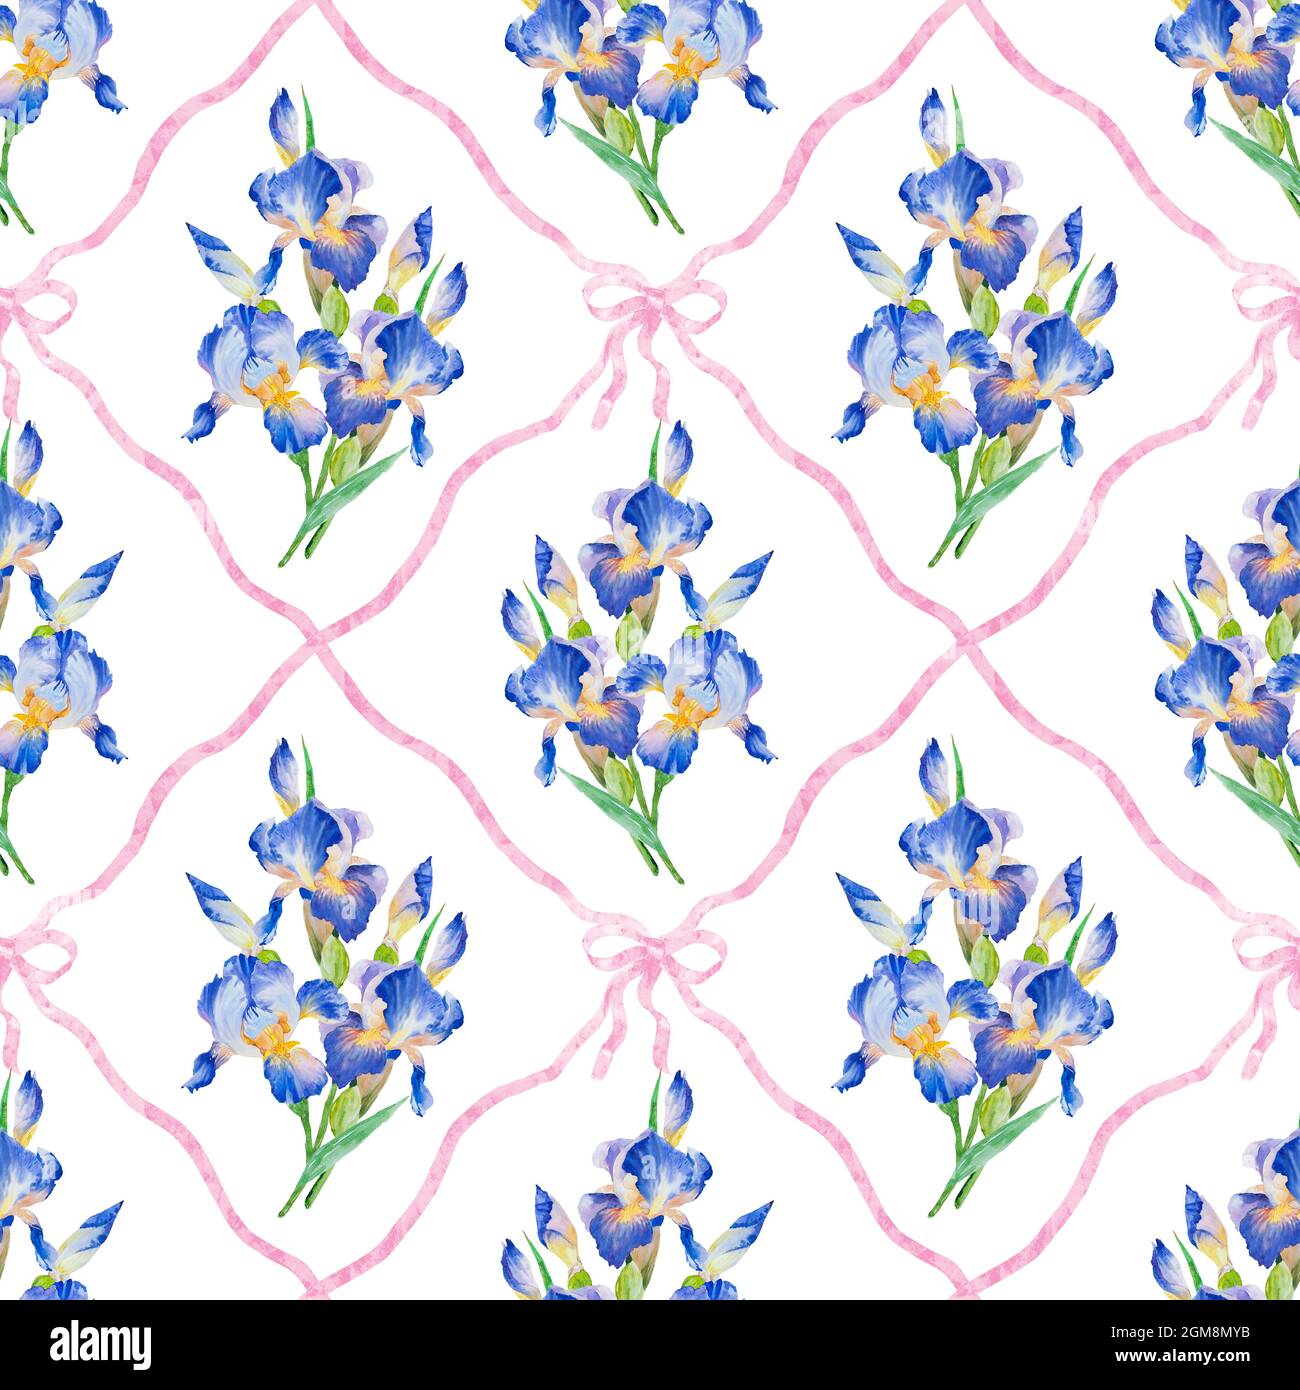 Aquarell Hand malen Iris Blume, nahtlose Muster. Schöne Iris Blumen und Blätter auf weißem Hintergrund. Stockfoto